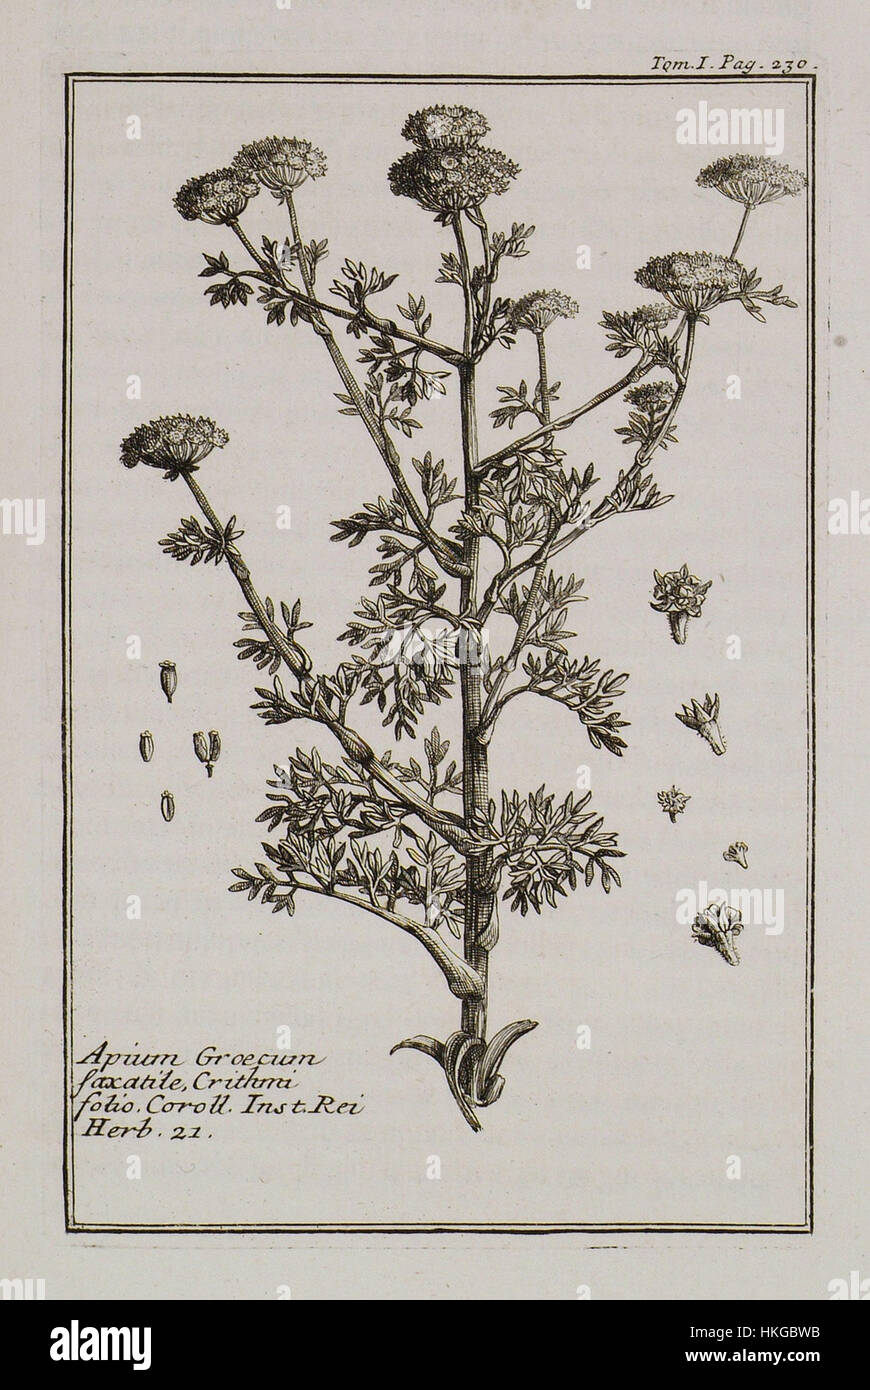 Apium Graecum saxatile, Crithmi folio Coroll Inst Rei herb 21   Tournefort Joseph Pitton De   1717 Stock Photo